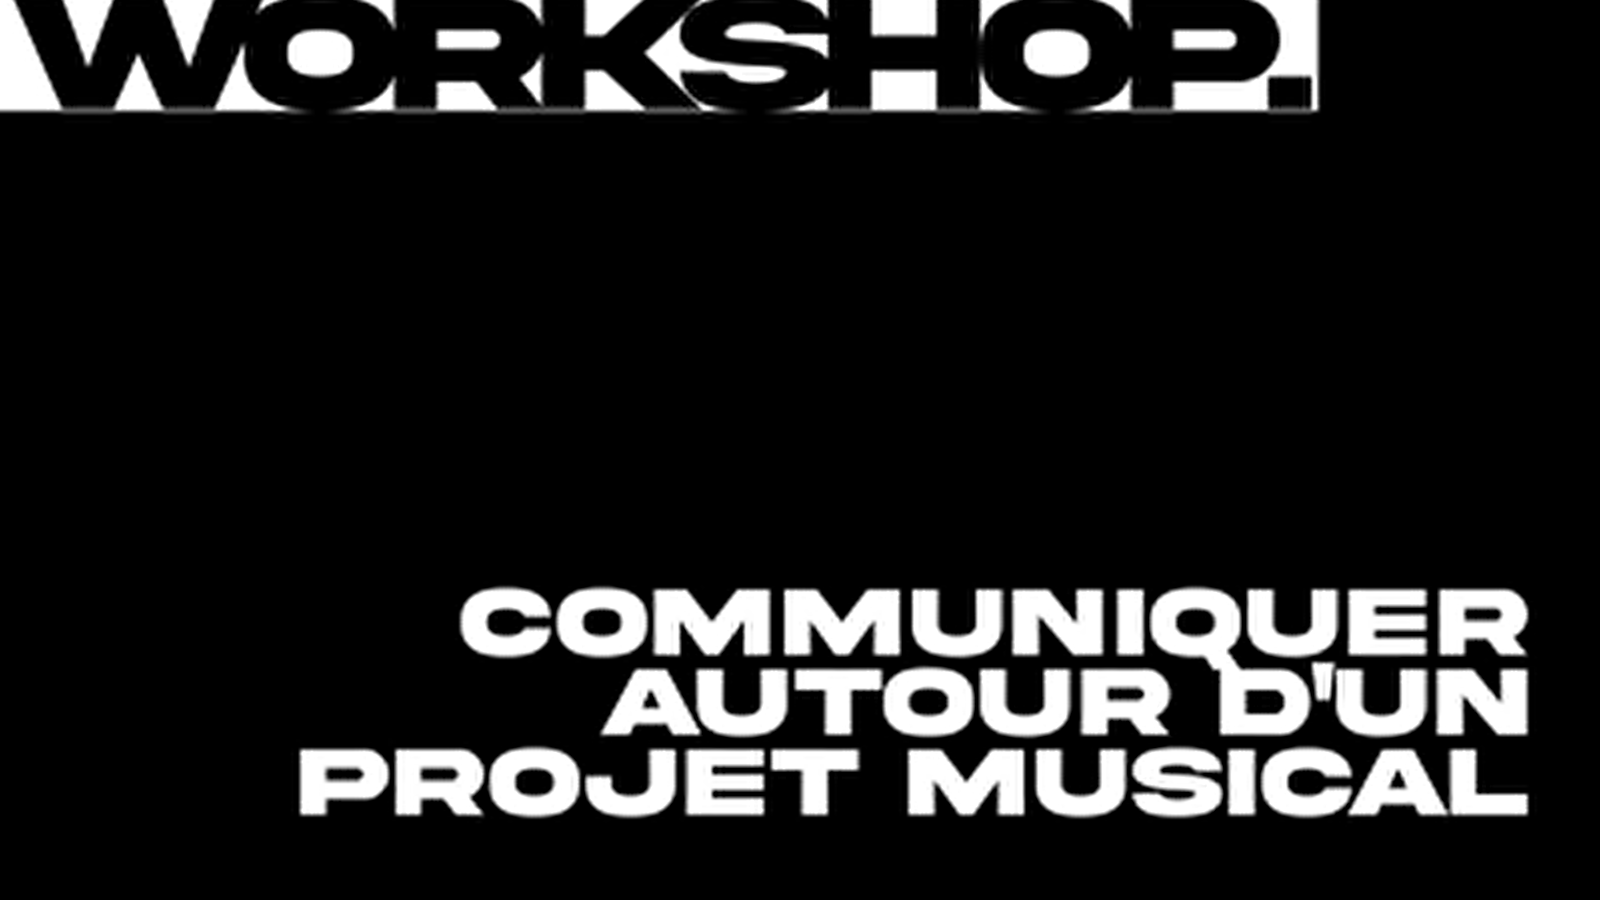 Workshop : Communiquer autour d'un projet musical